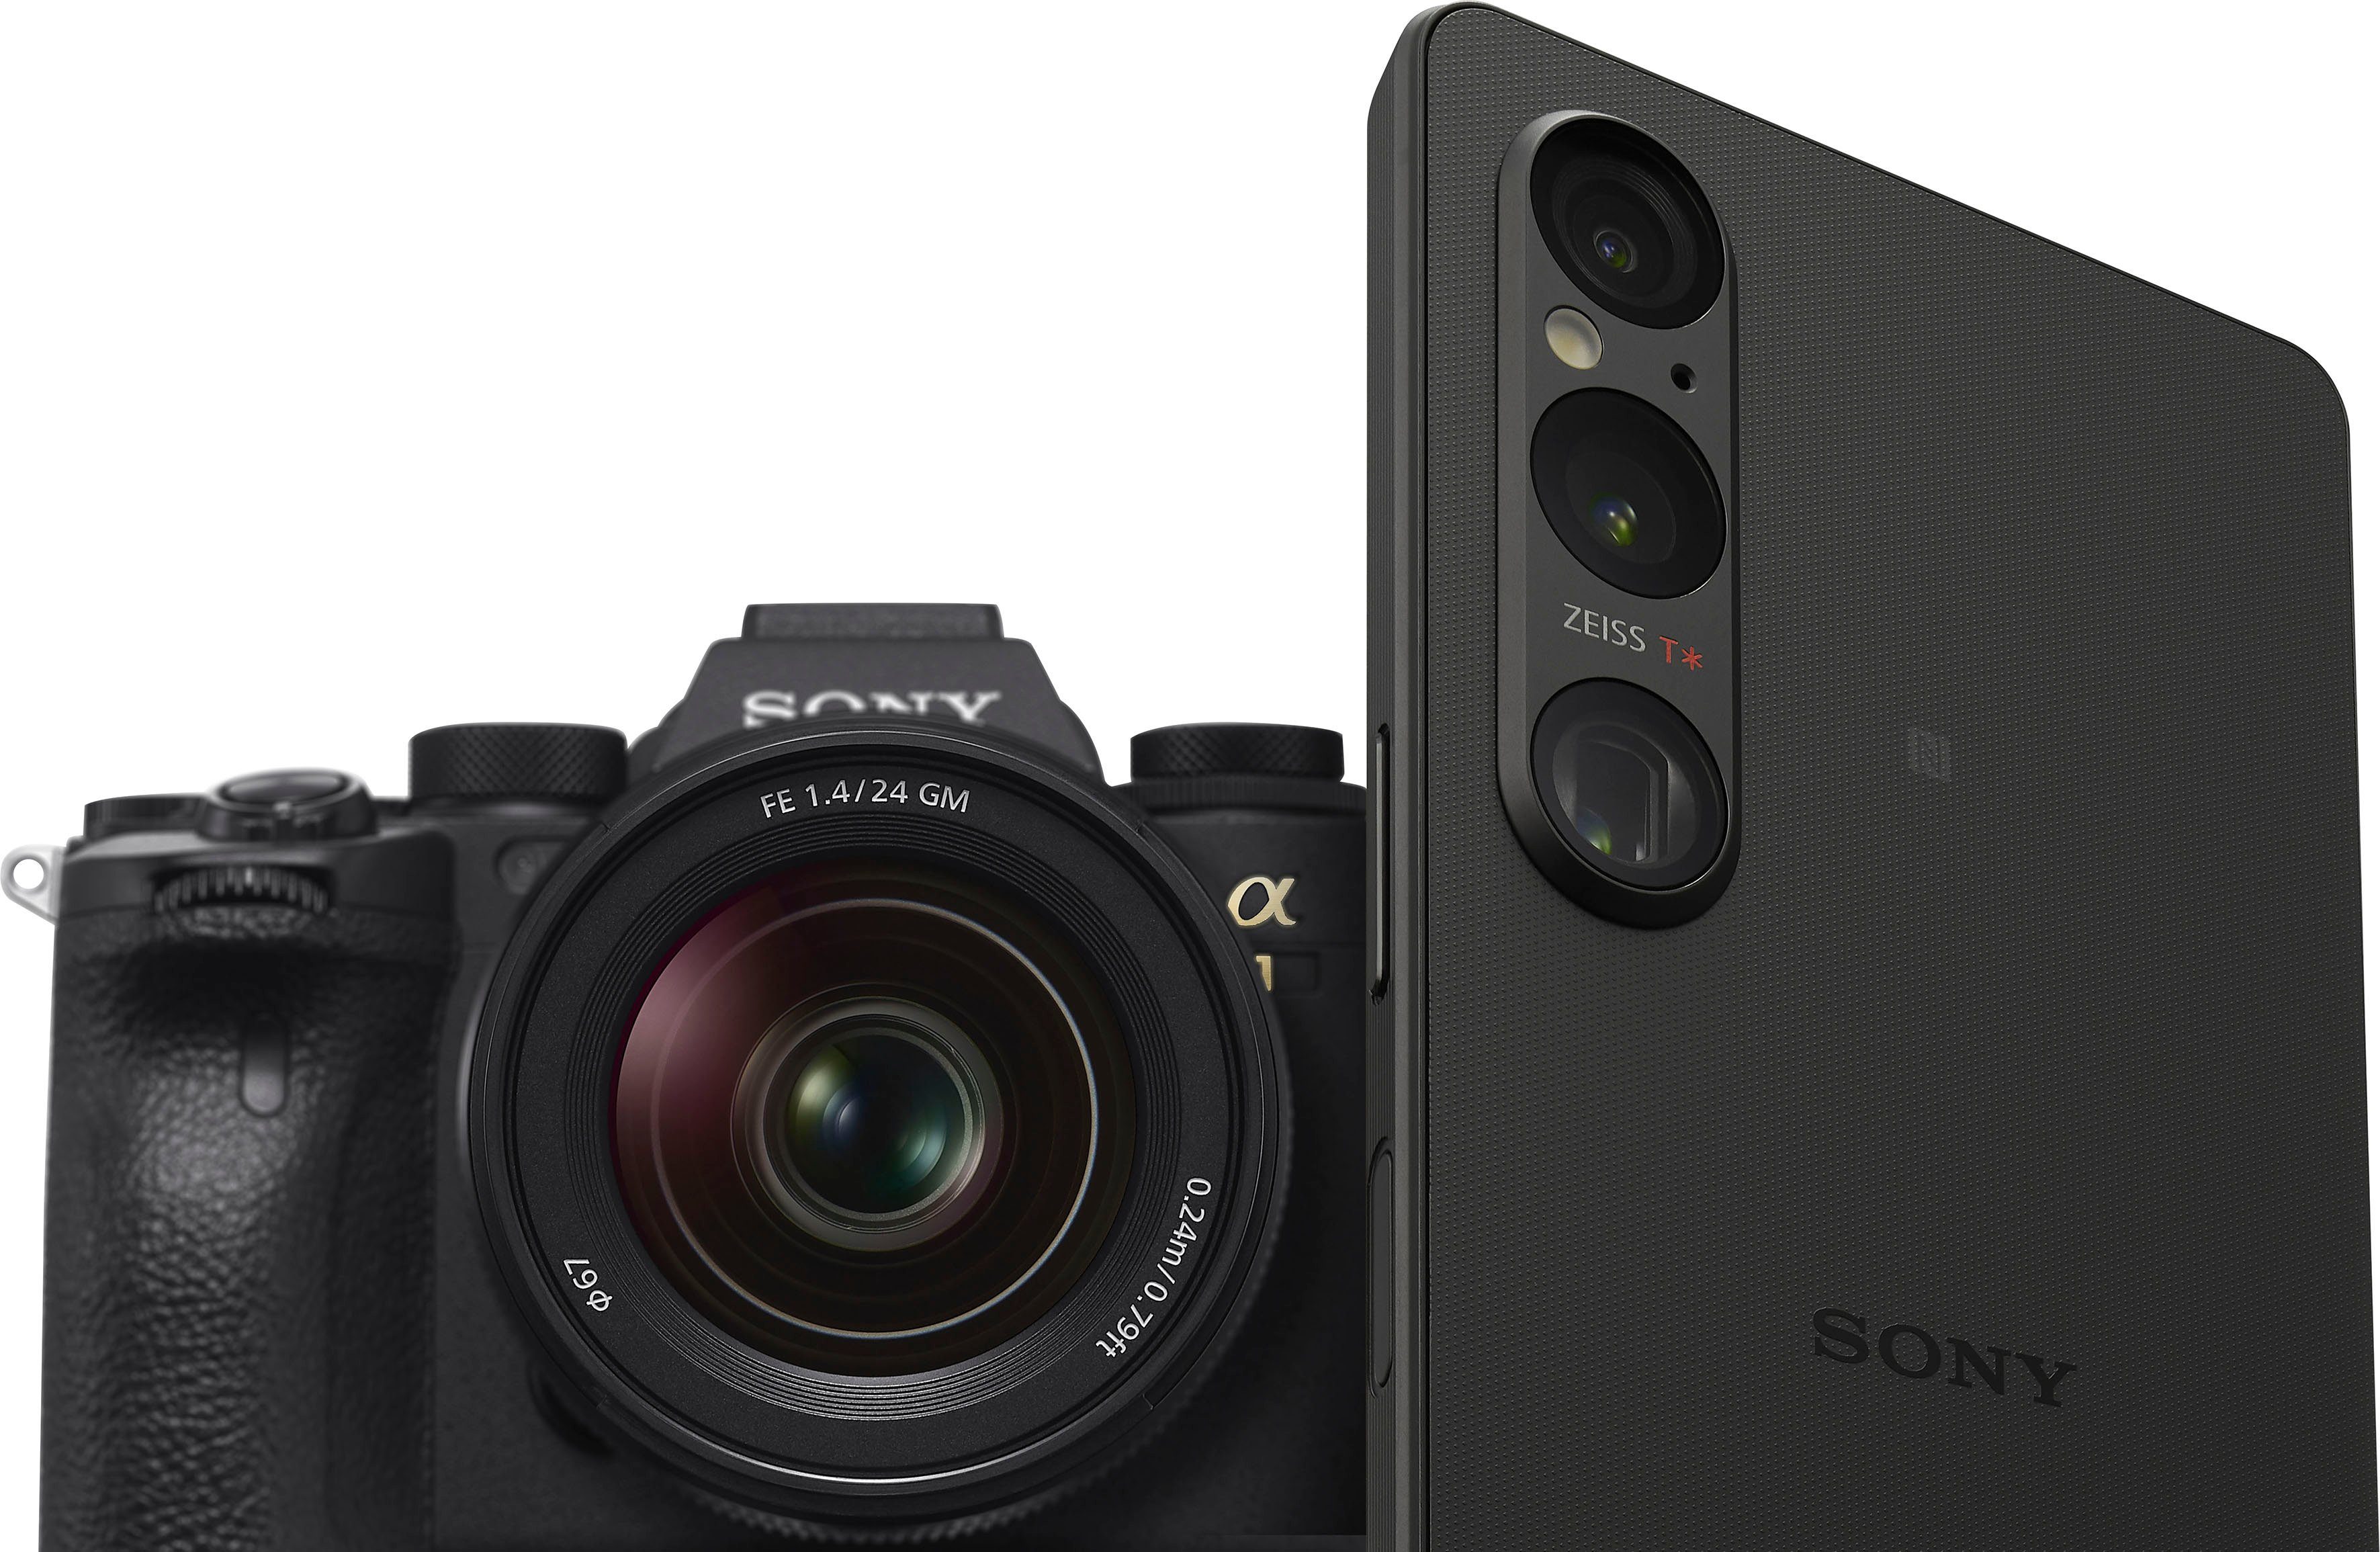 Sony XPERIA Kamera) cm/6,5 (16,5 256 1V MP Speicherplatz, schwarz 52 Zoll, GB Smartphone